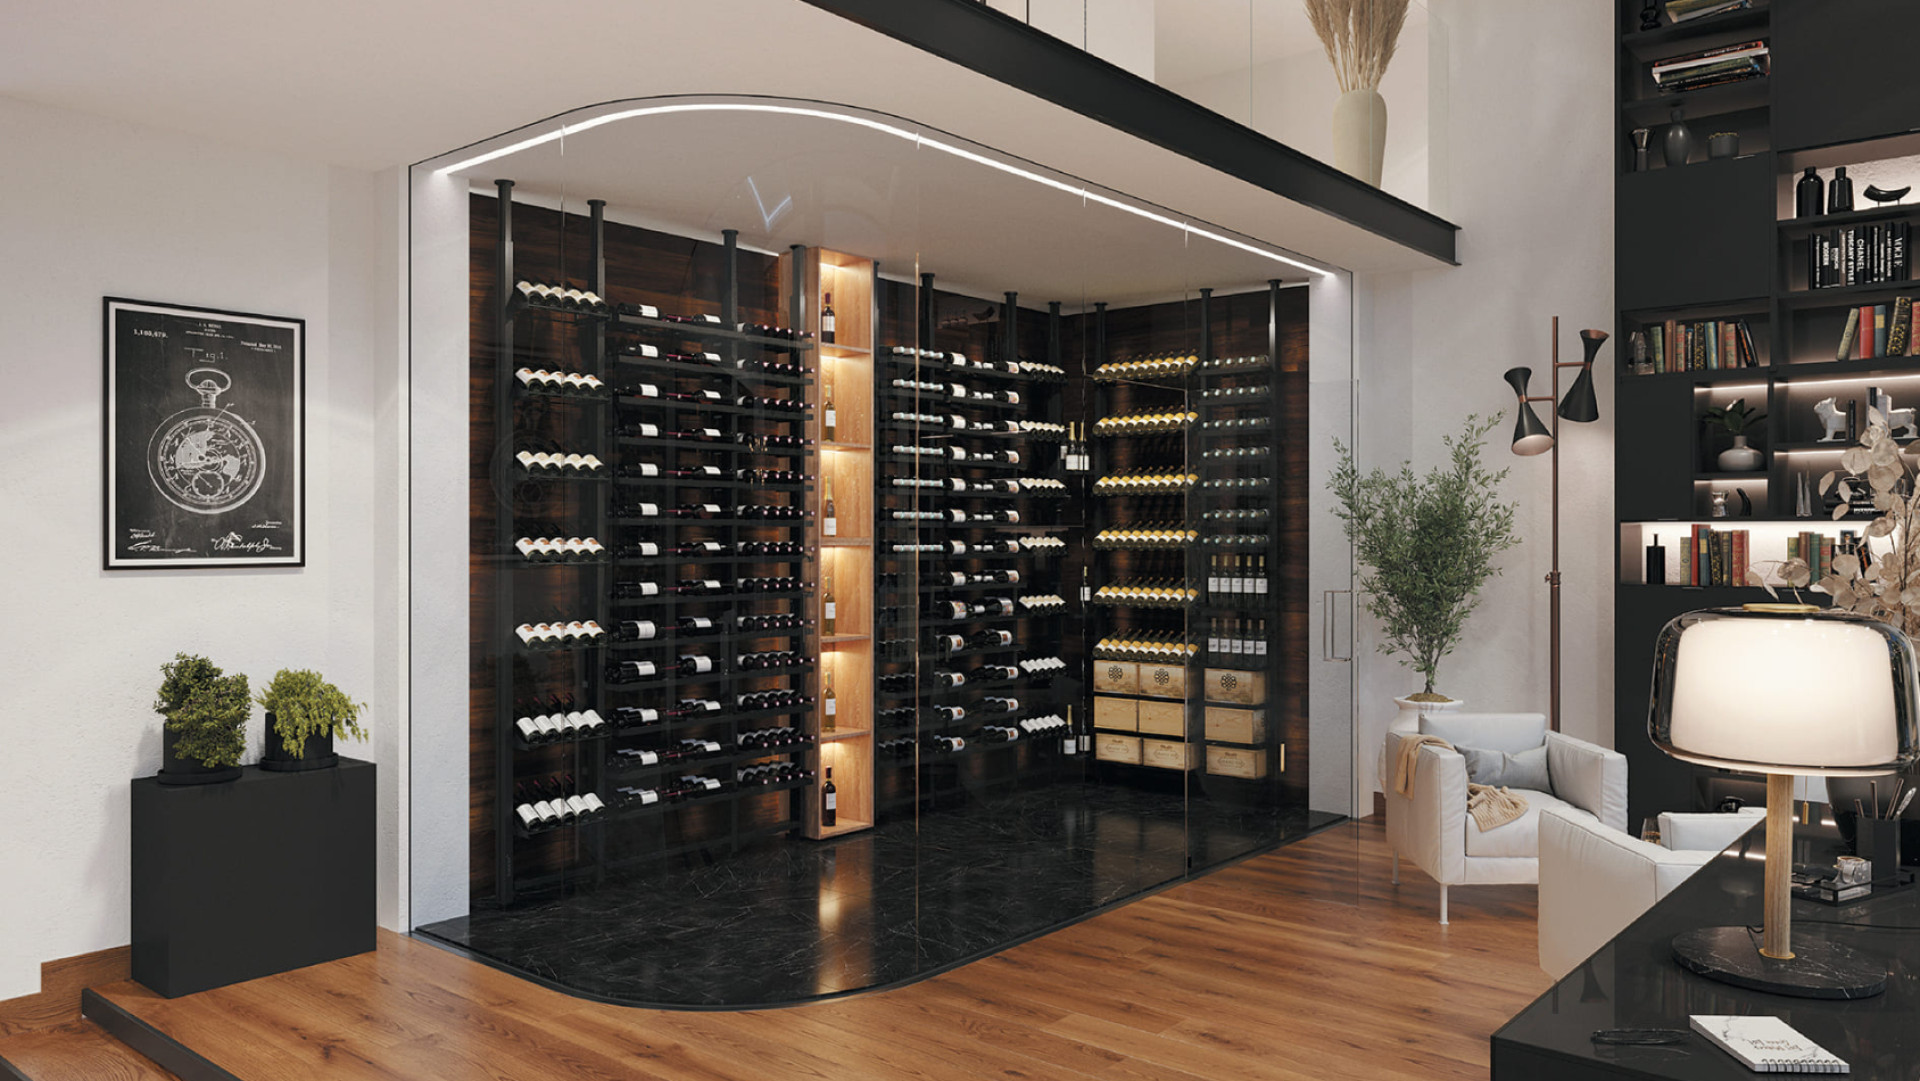 Gestalten Sie den Weinkeller Ihrer Träume, indem Sie in Ihrem Wohnzimmer einen verglasten Weinbereich mit modernen, speziell für Wein konzipierten Metalllagerschränken schaffen.